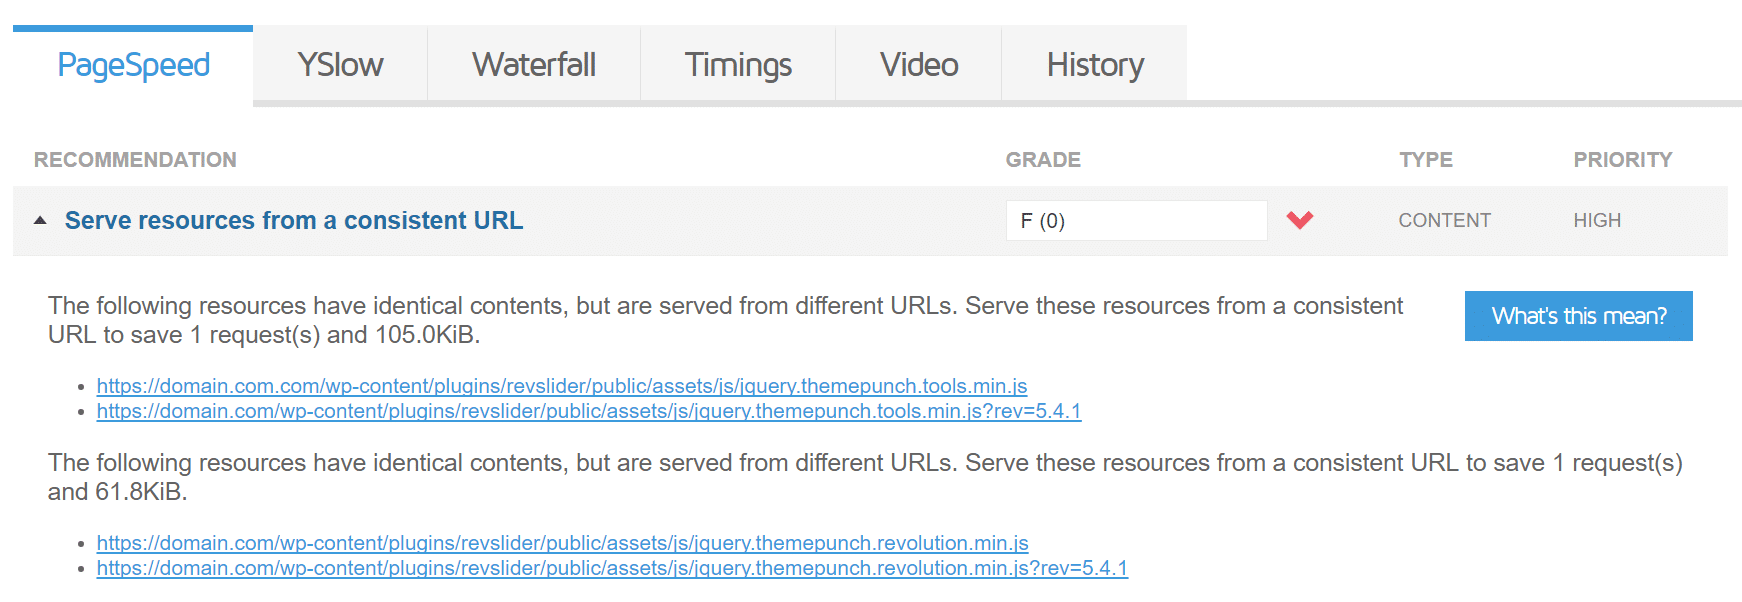 Servire le risorse da un URL coerente